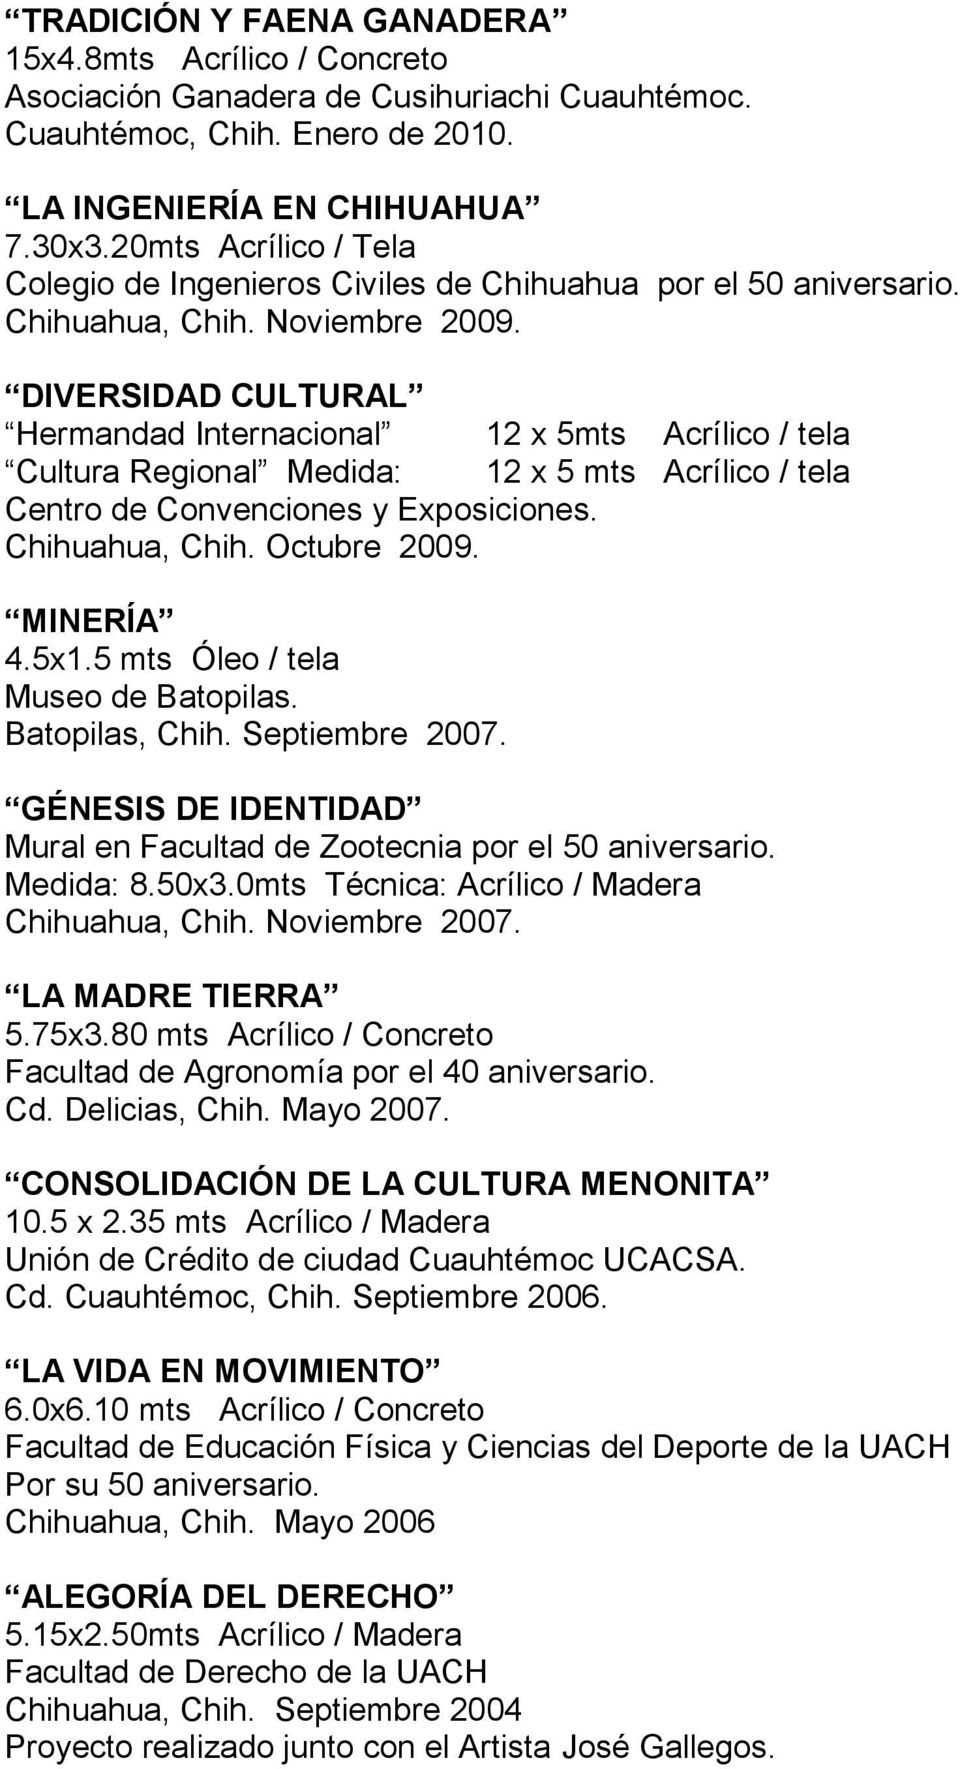 DIVERSIDAD CULTURAL Hermandad Internacional 12 x 5mts Acrílico / tela Cultura Regional Medida: 12 x 5 mts Acrílico / tela Centro de Convenciones y Exposiciones. Chihuahua, Chih. Octubre 2009.